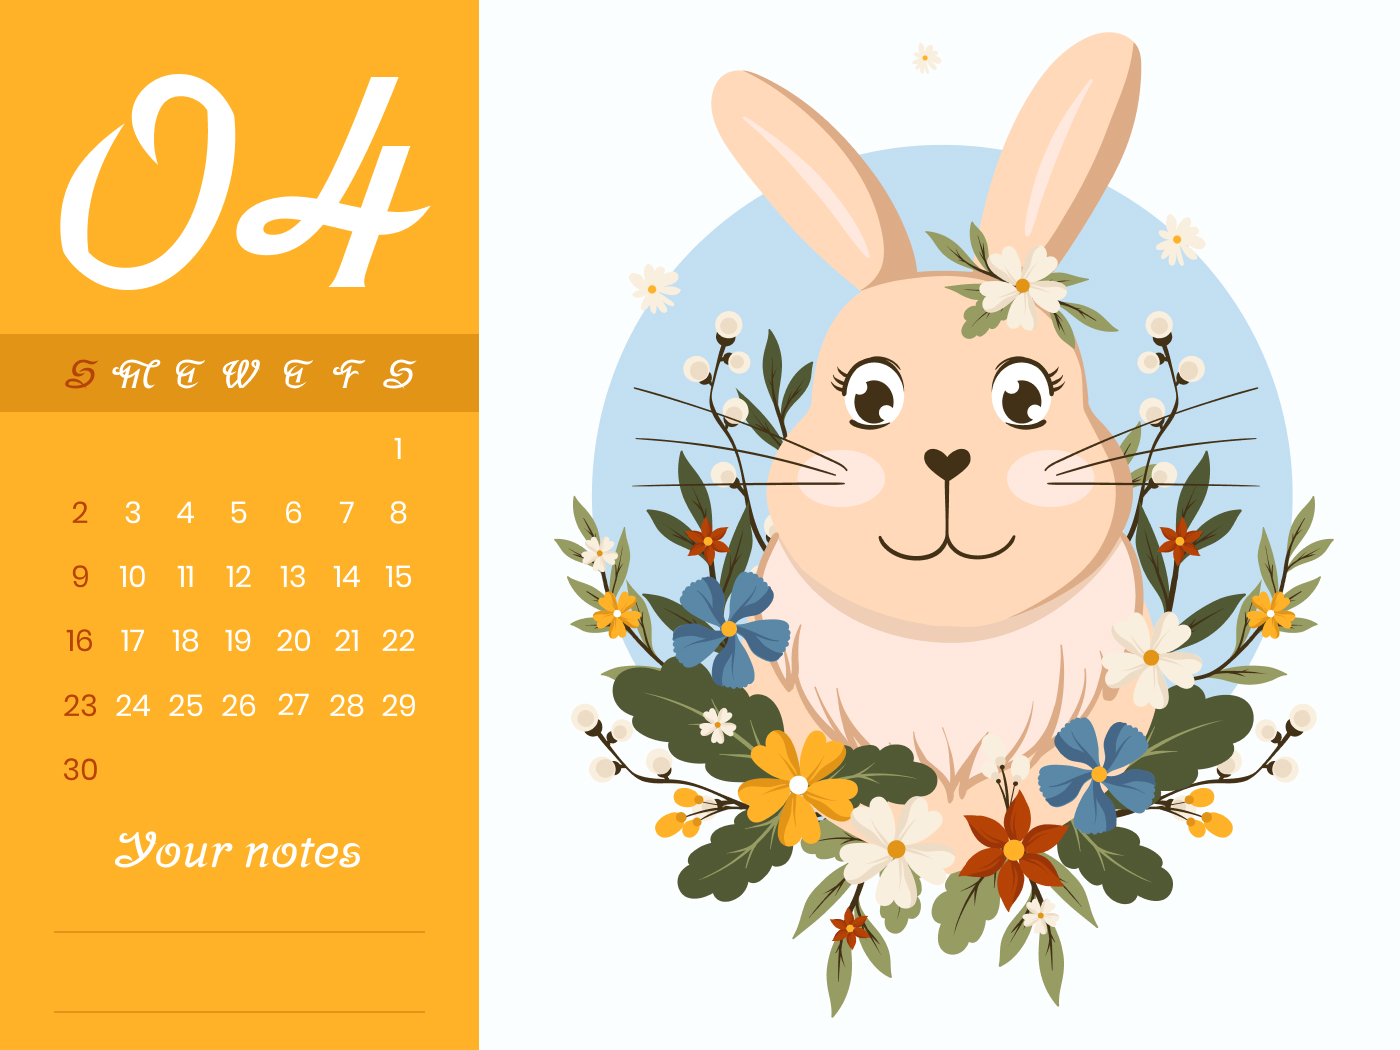 Calendar with a cute bunny on it.